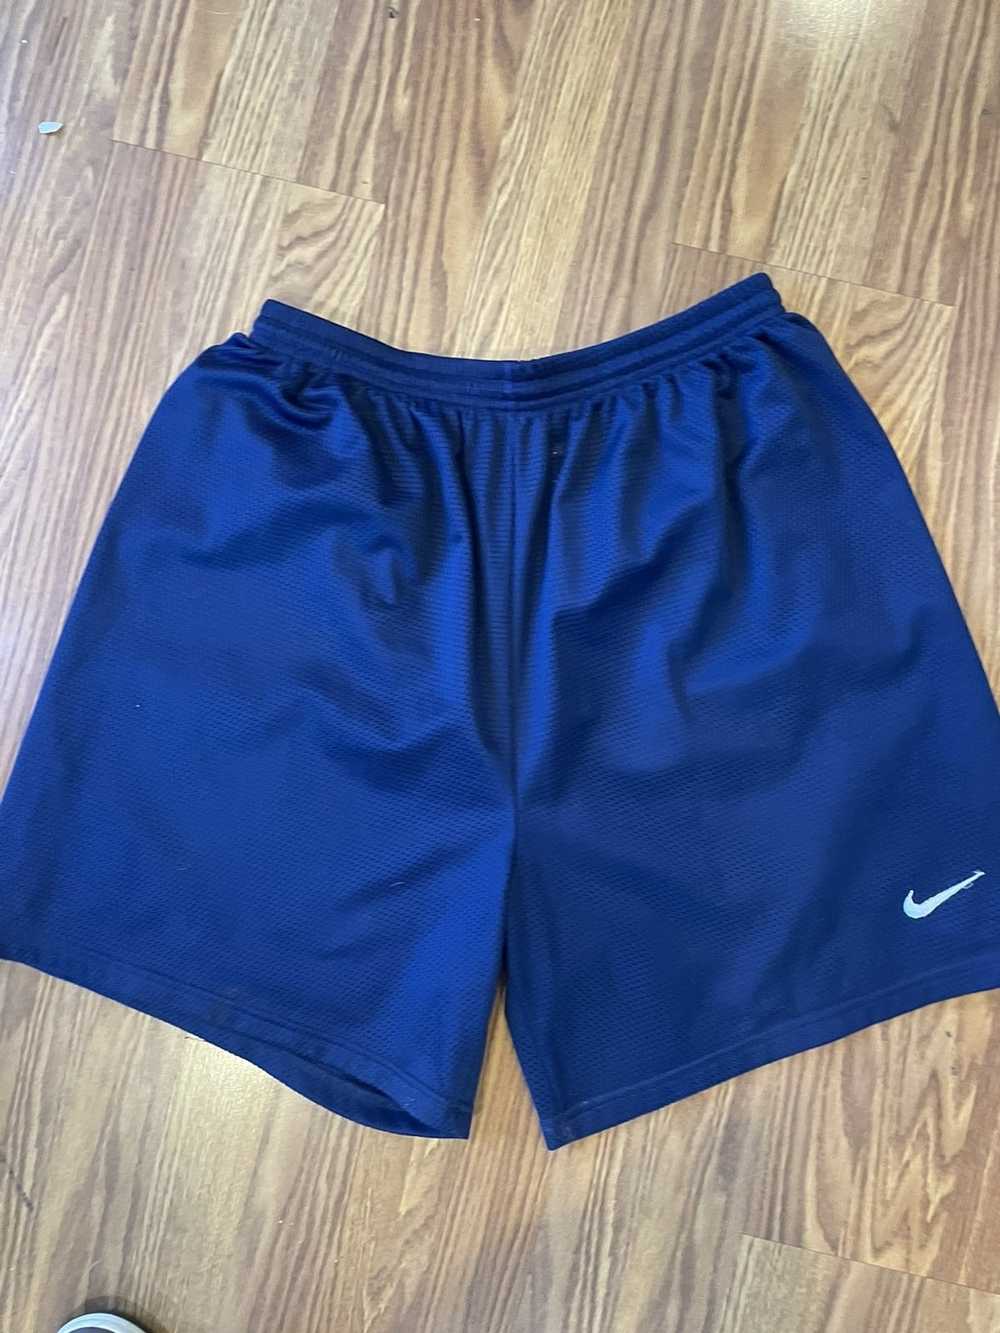 Nike Vintage 90s nike basketball shorts xl blue - image 3